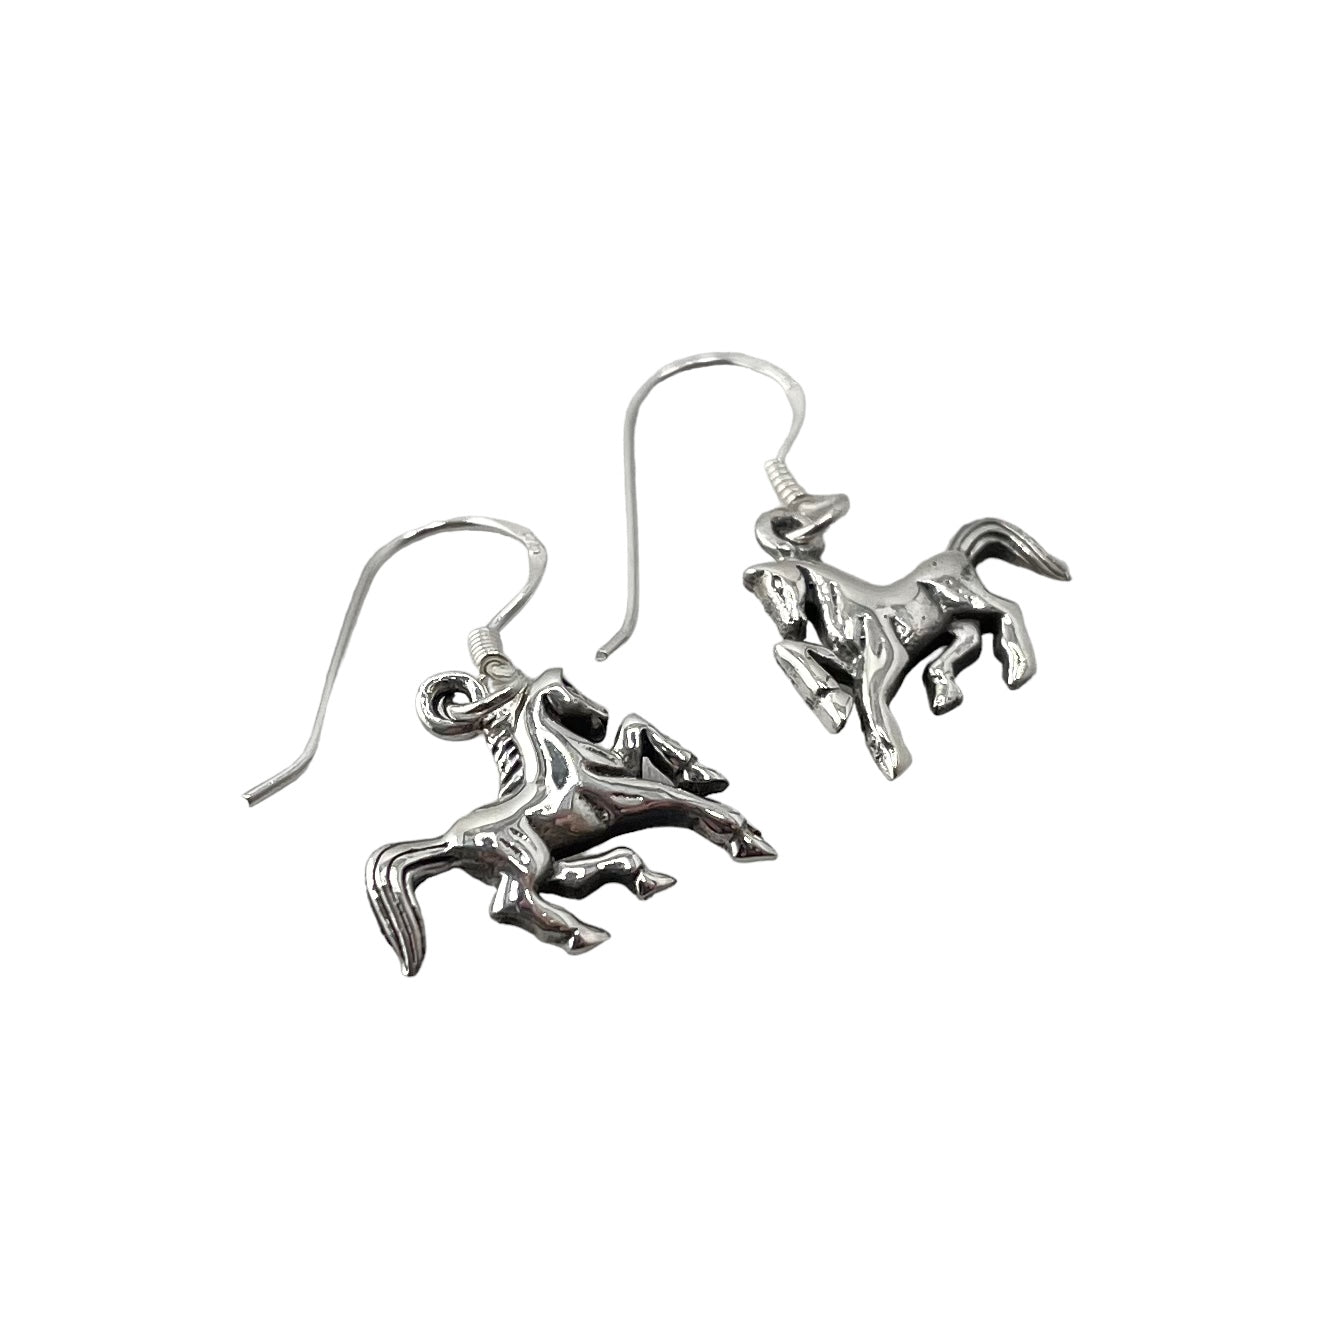 Horse Dangle Earrings Sterling Silver